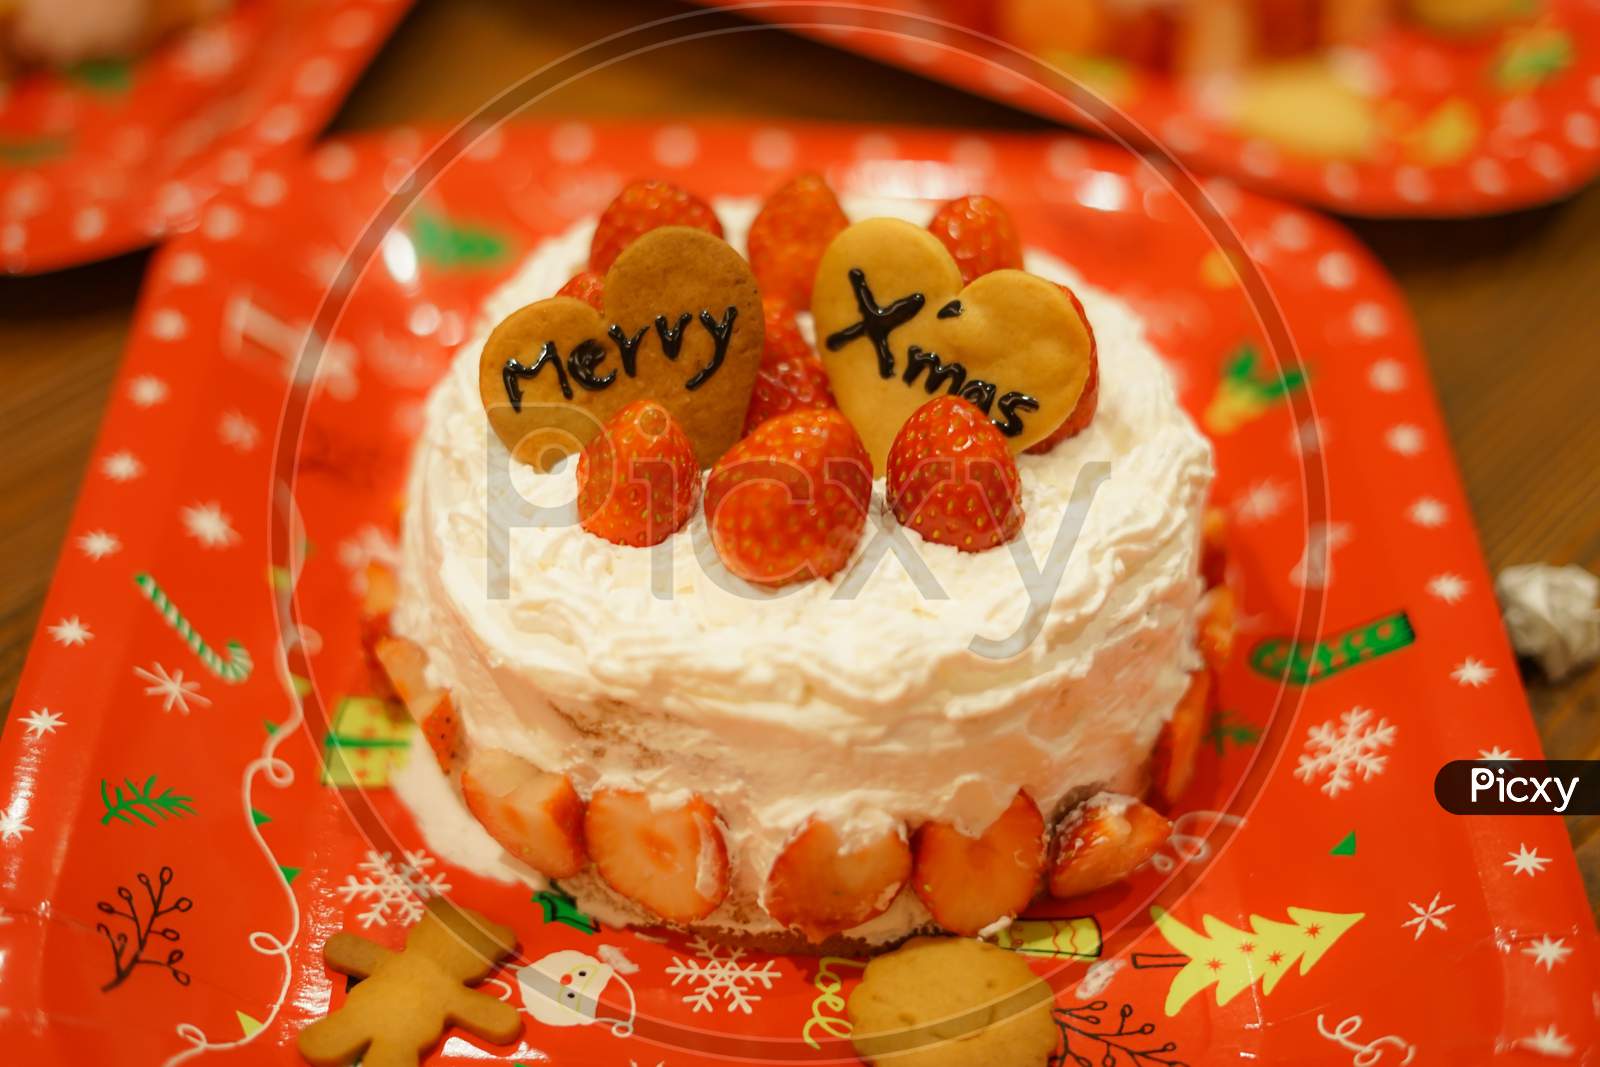 Image Of Christmas Cake